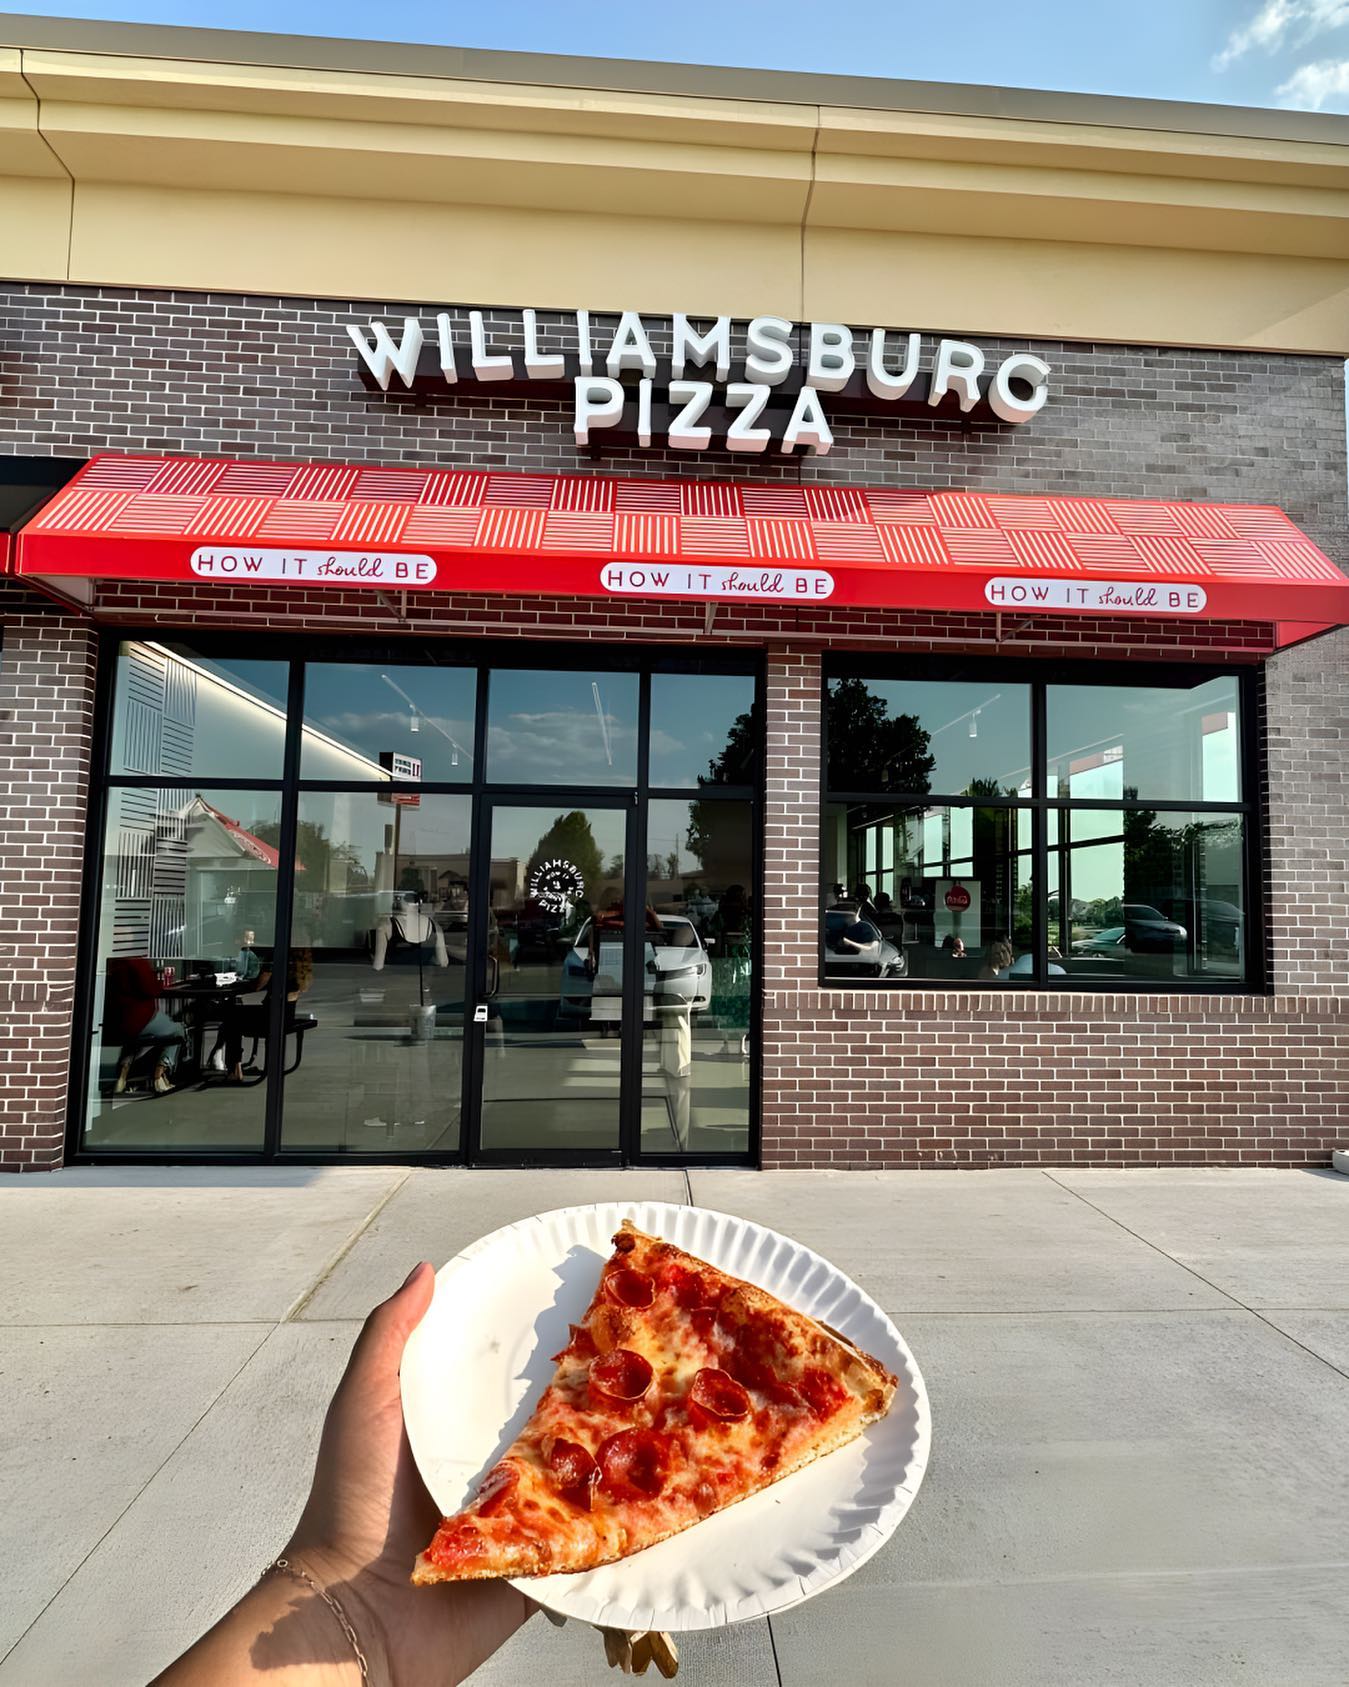 Williamsburg Pizza